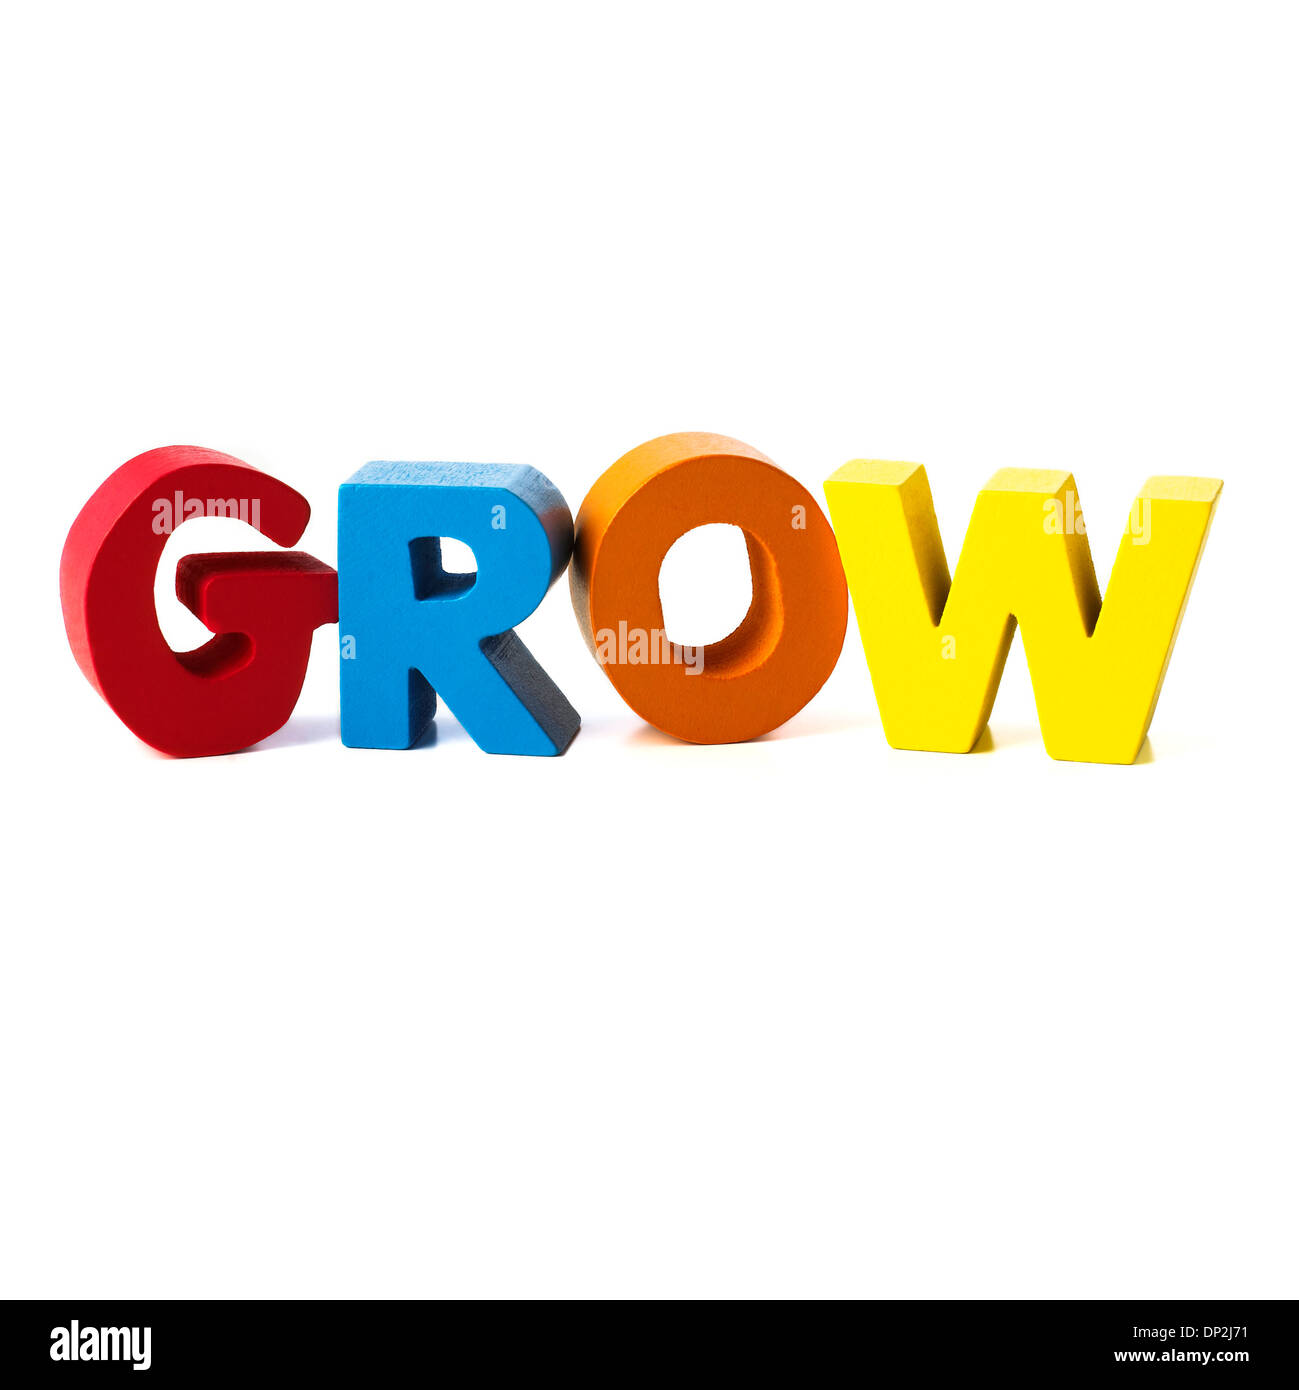 La croissance, conceptual image Banque D'Images